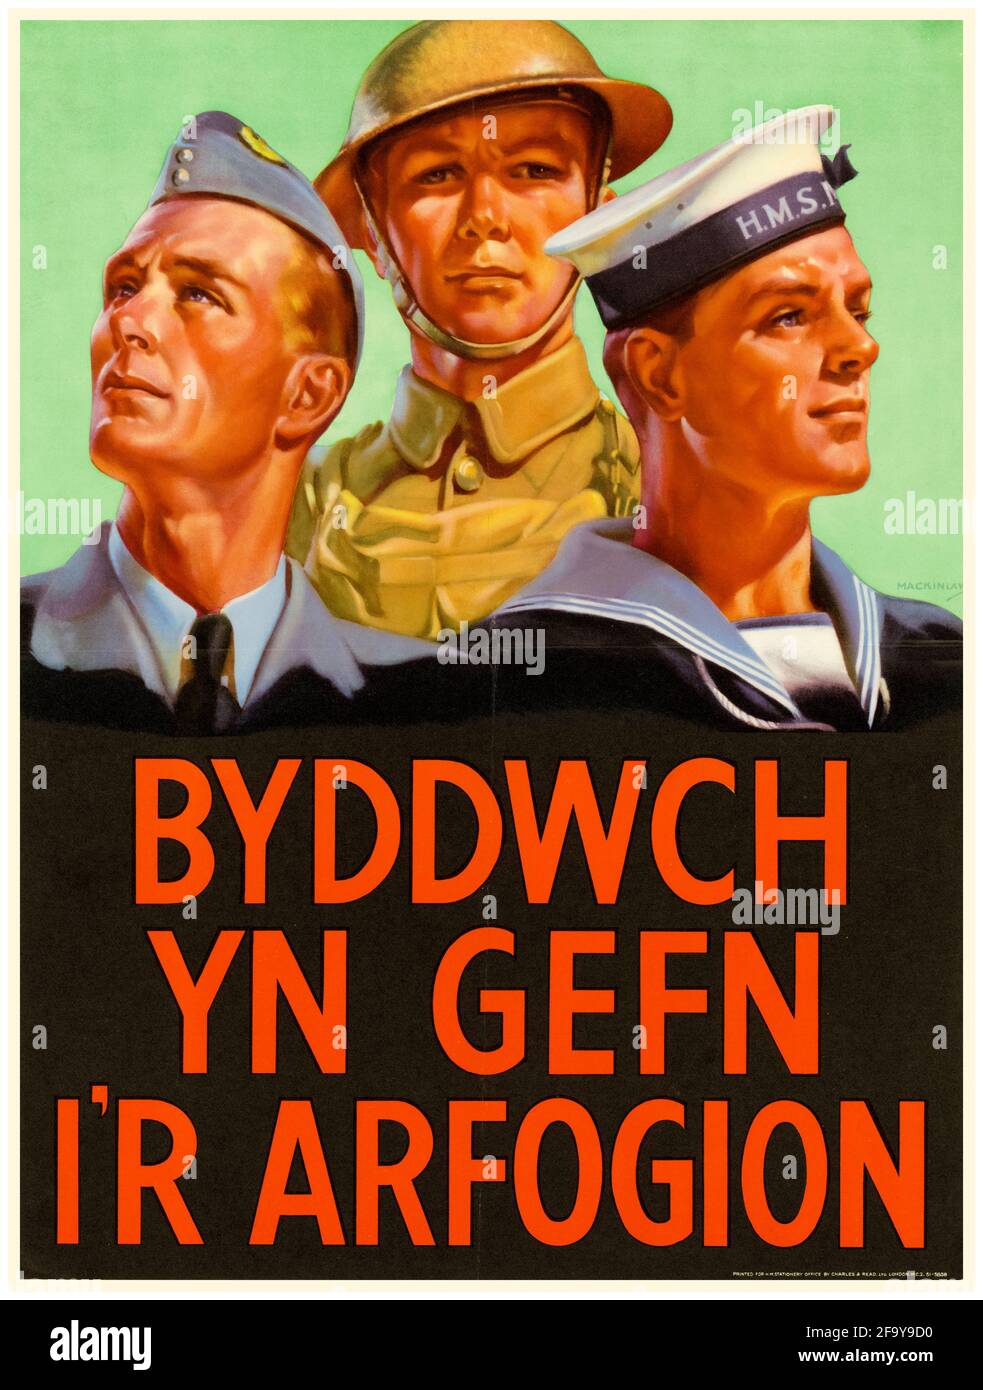 British, WW2, affiche de la langue galloise motivante, soyez un partisan des Forces armées, 1942-1945 Banque D'Images